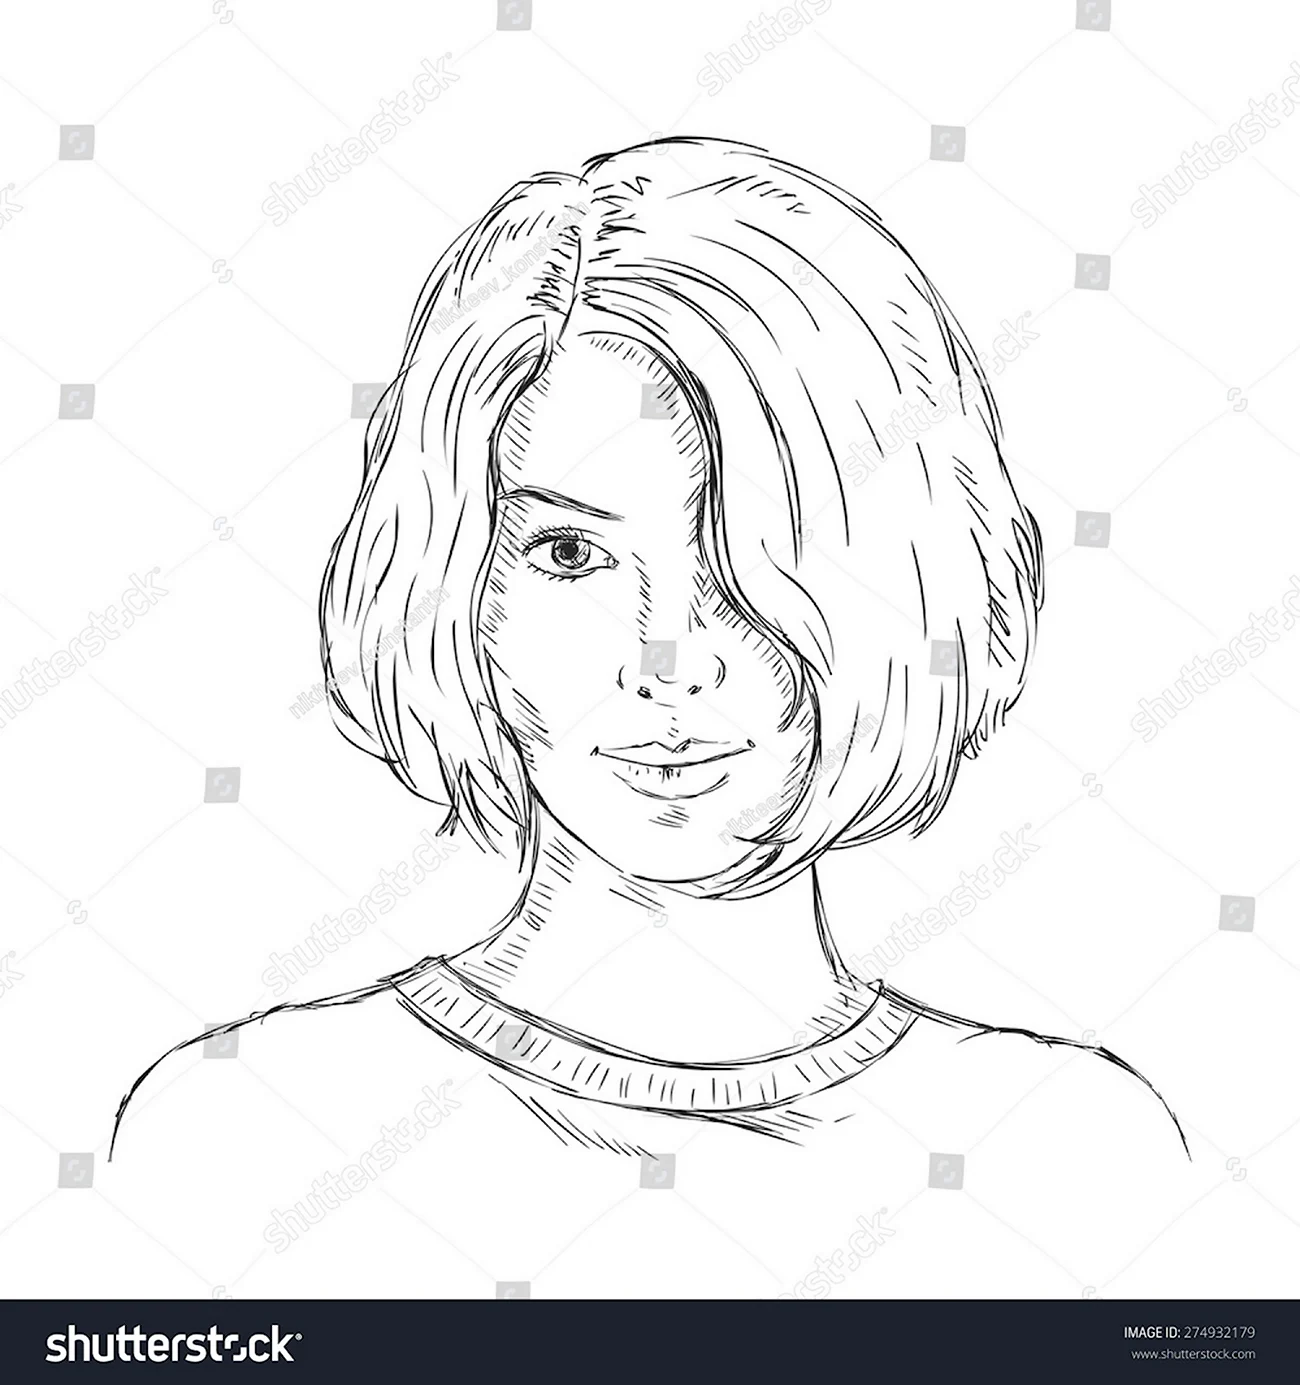 Портрет девушки с короткими волосами карандашом. Для срисовки